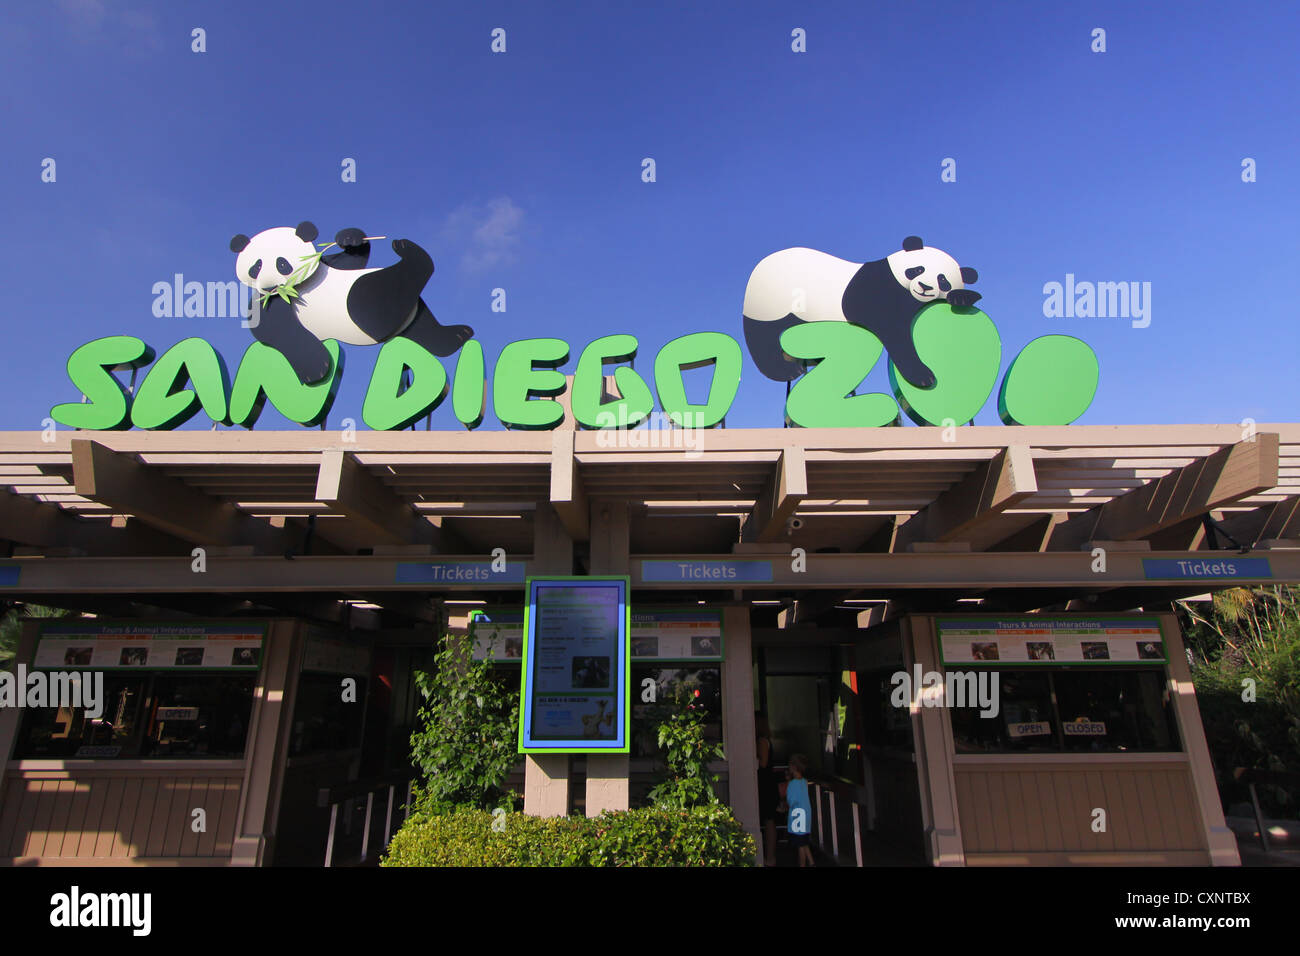 San diego zoo entrance Stock Photo